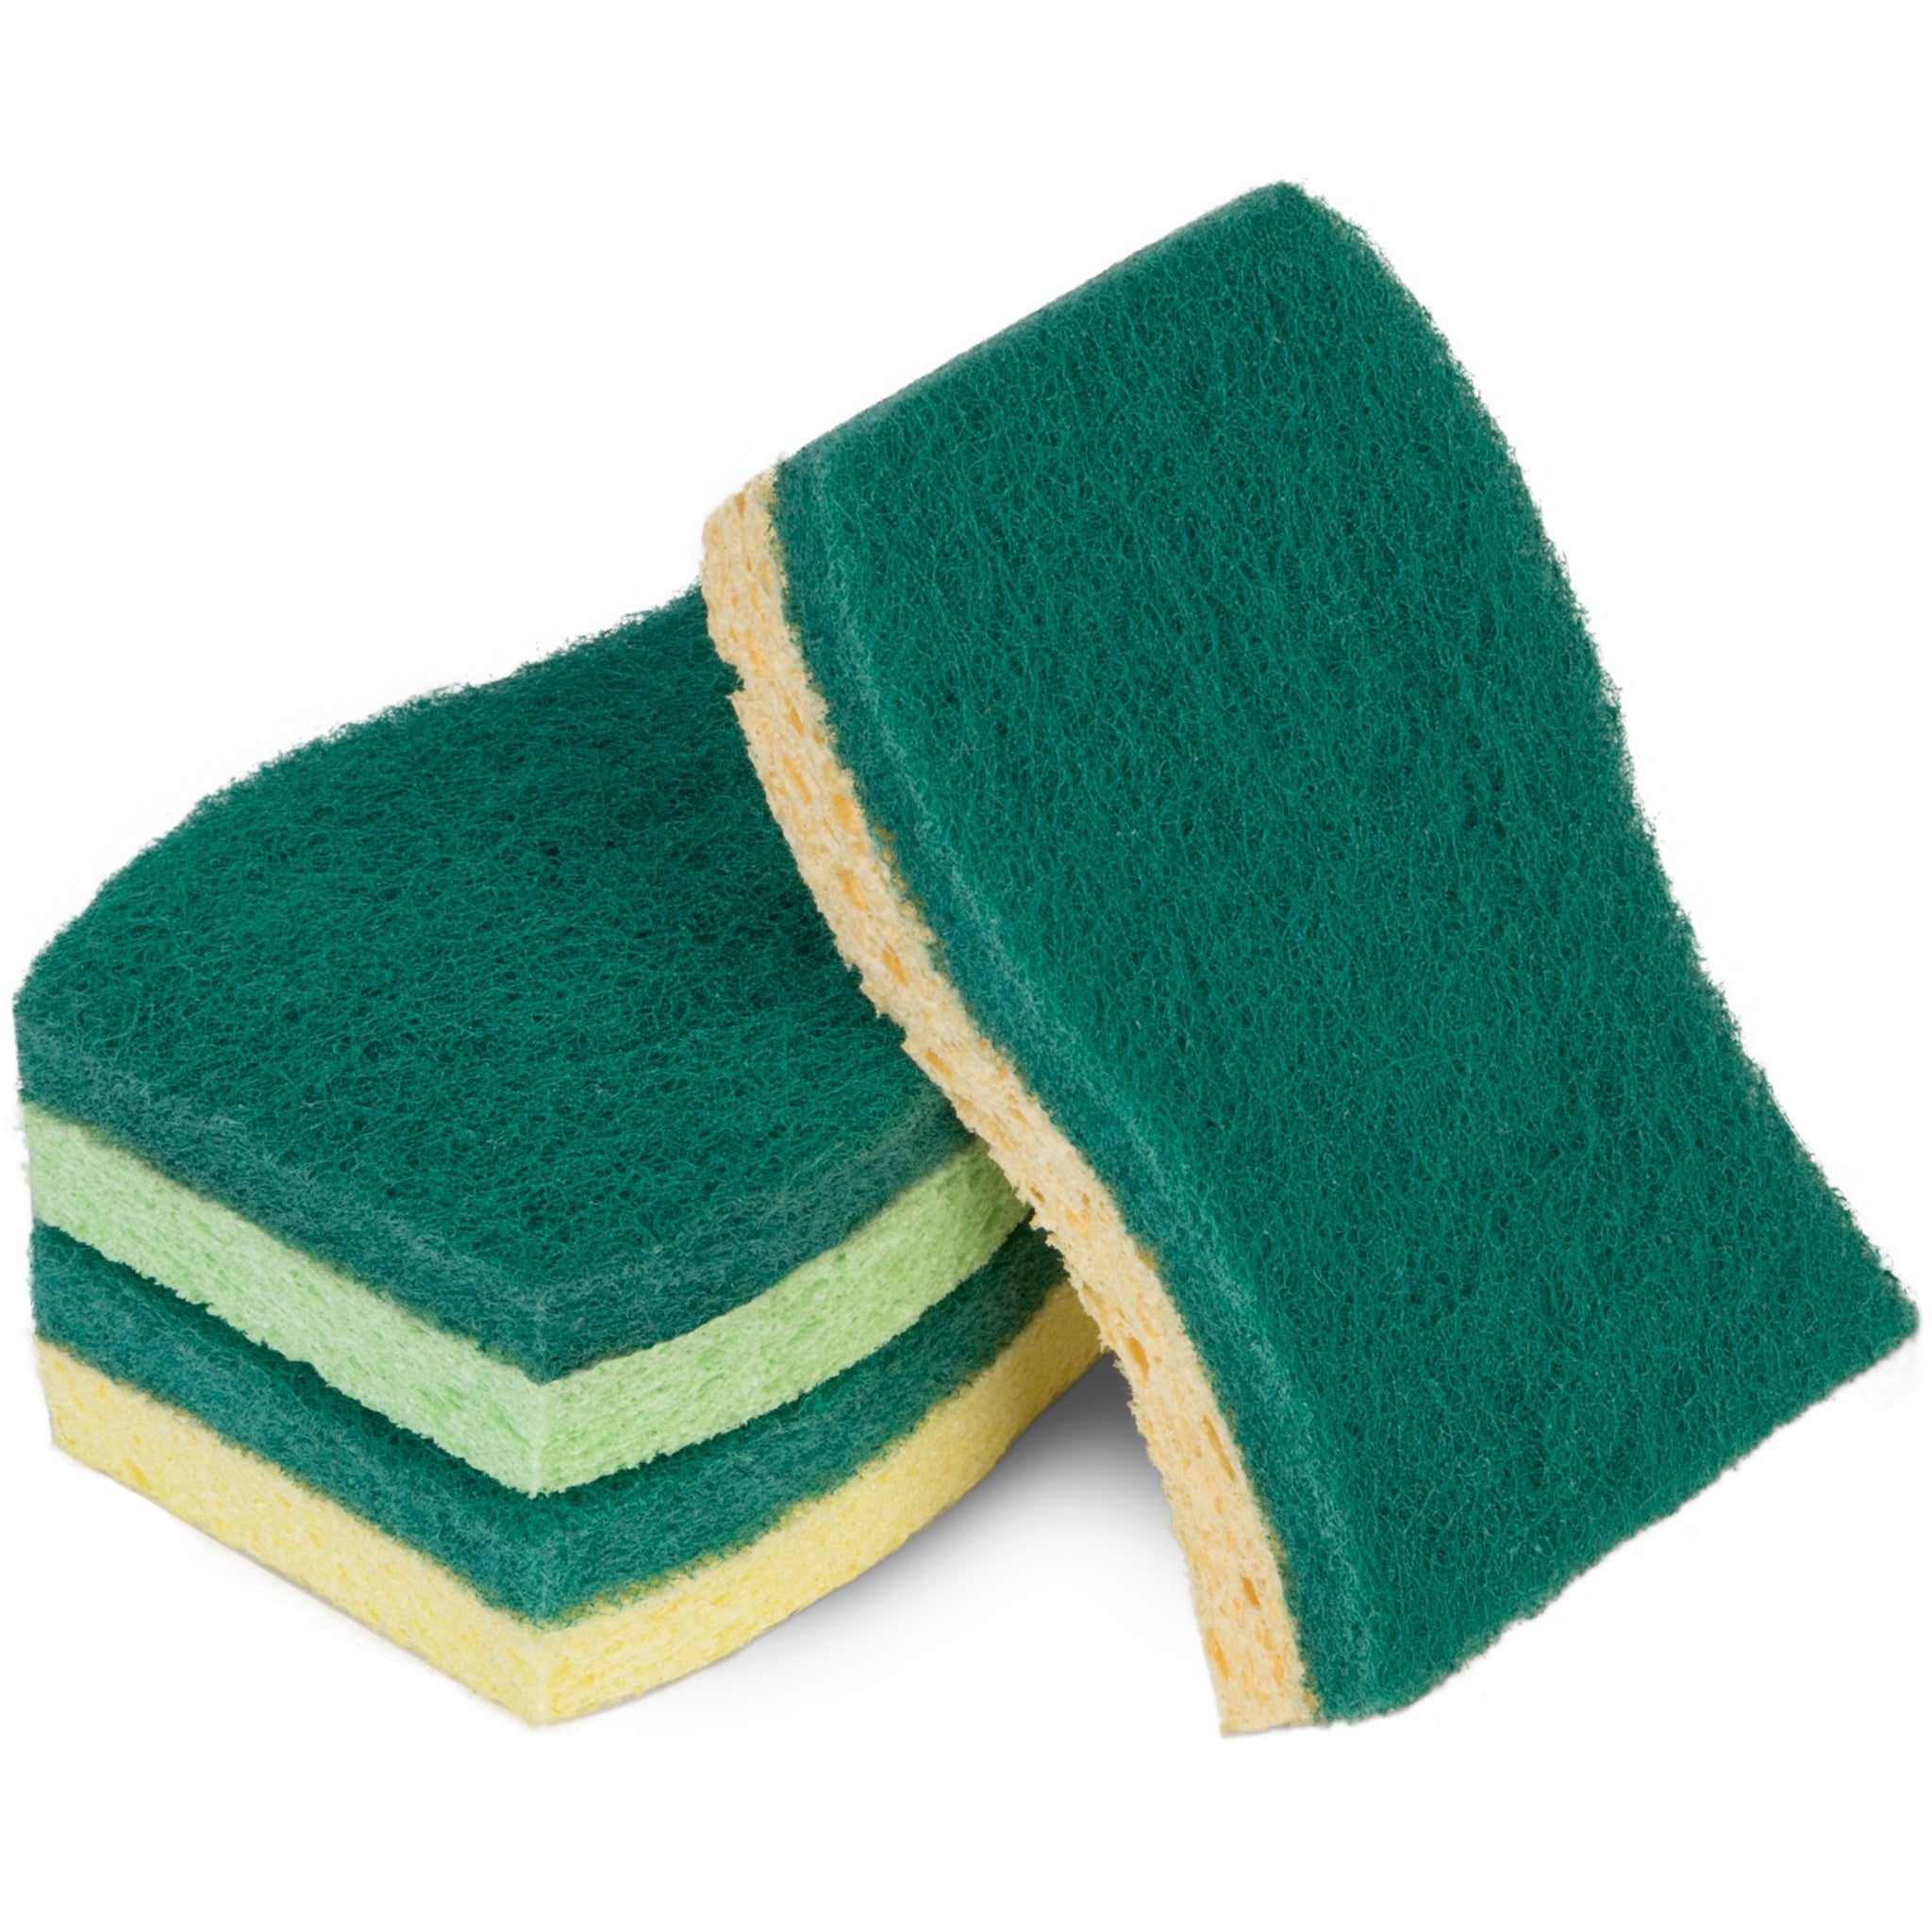 Solid Dish Soap Sponge Cloth Bundle